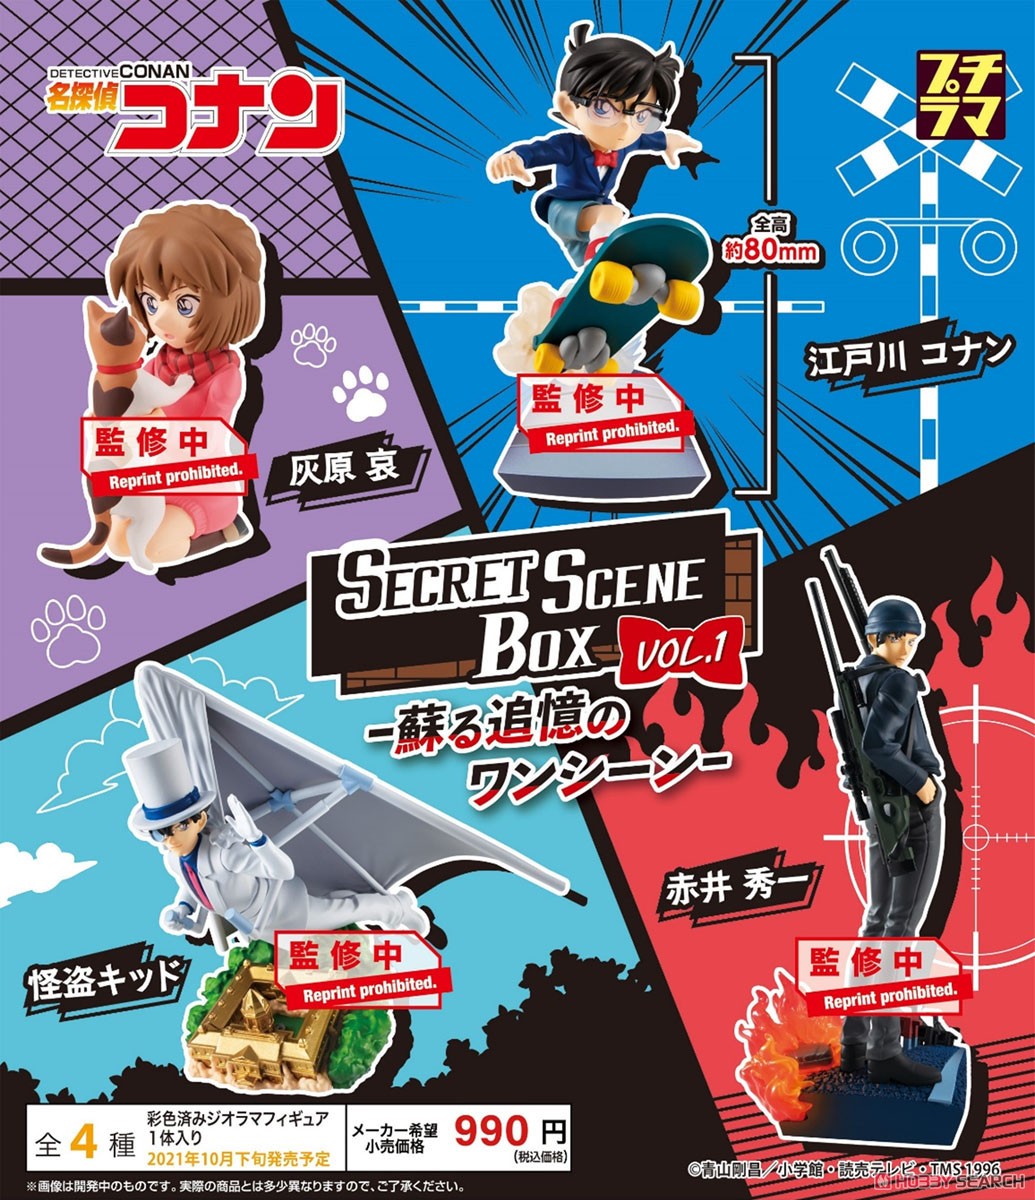 プチラマシリーズ『名探偵コナン SECRET SCENE BOX Vol.1』4個入りBOX-006